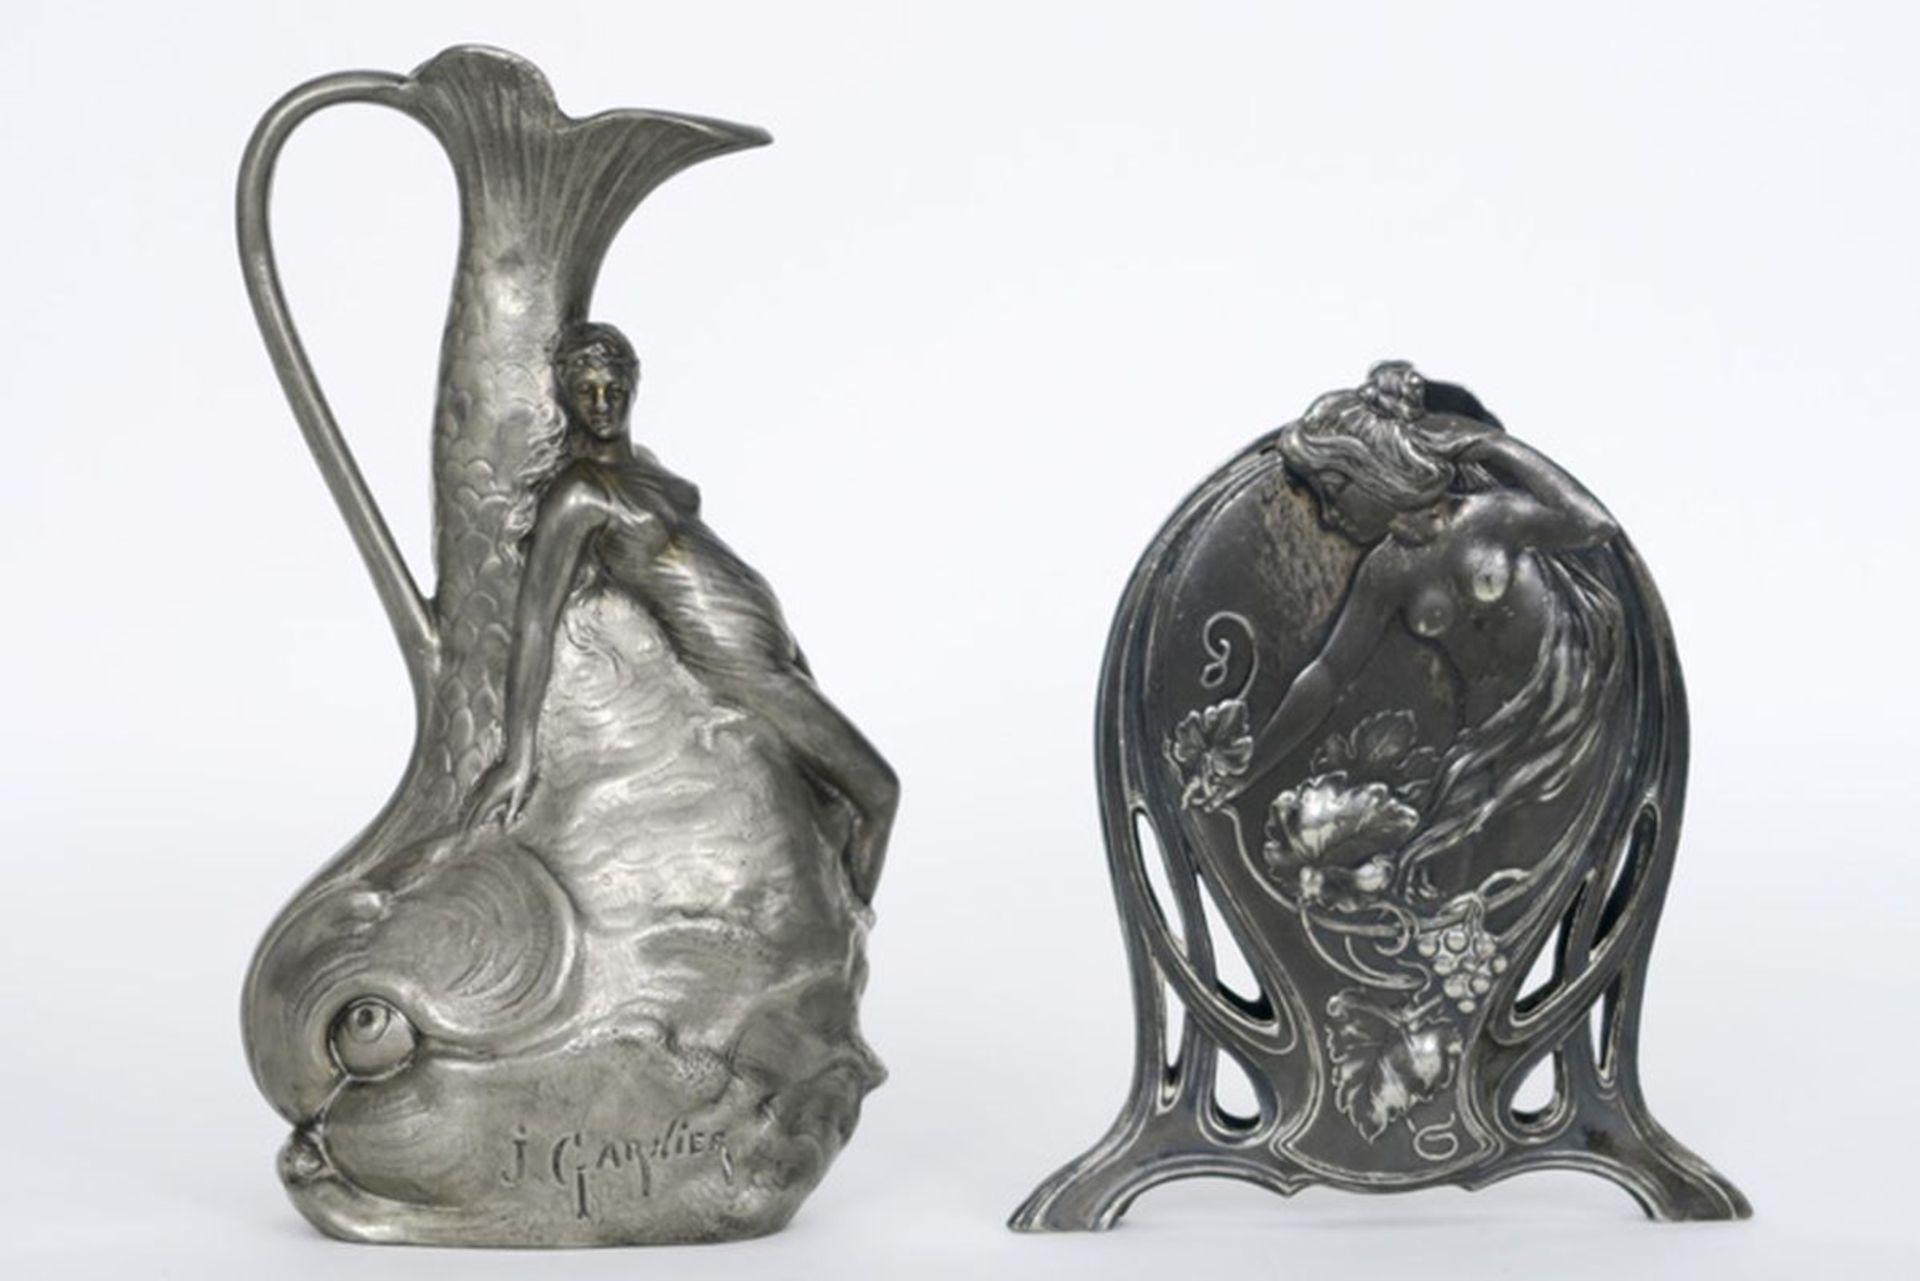 Lot van twee Art Nouveau items in zilvertin met typische zweepslagornamentiek : - een [...]